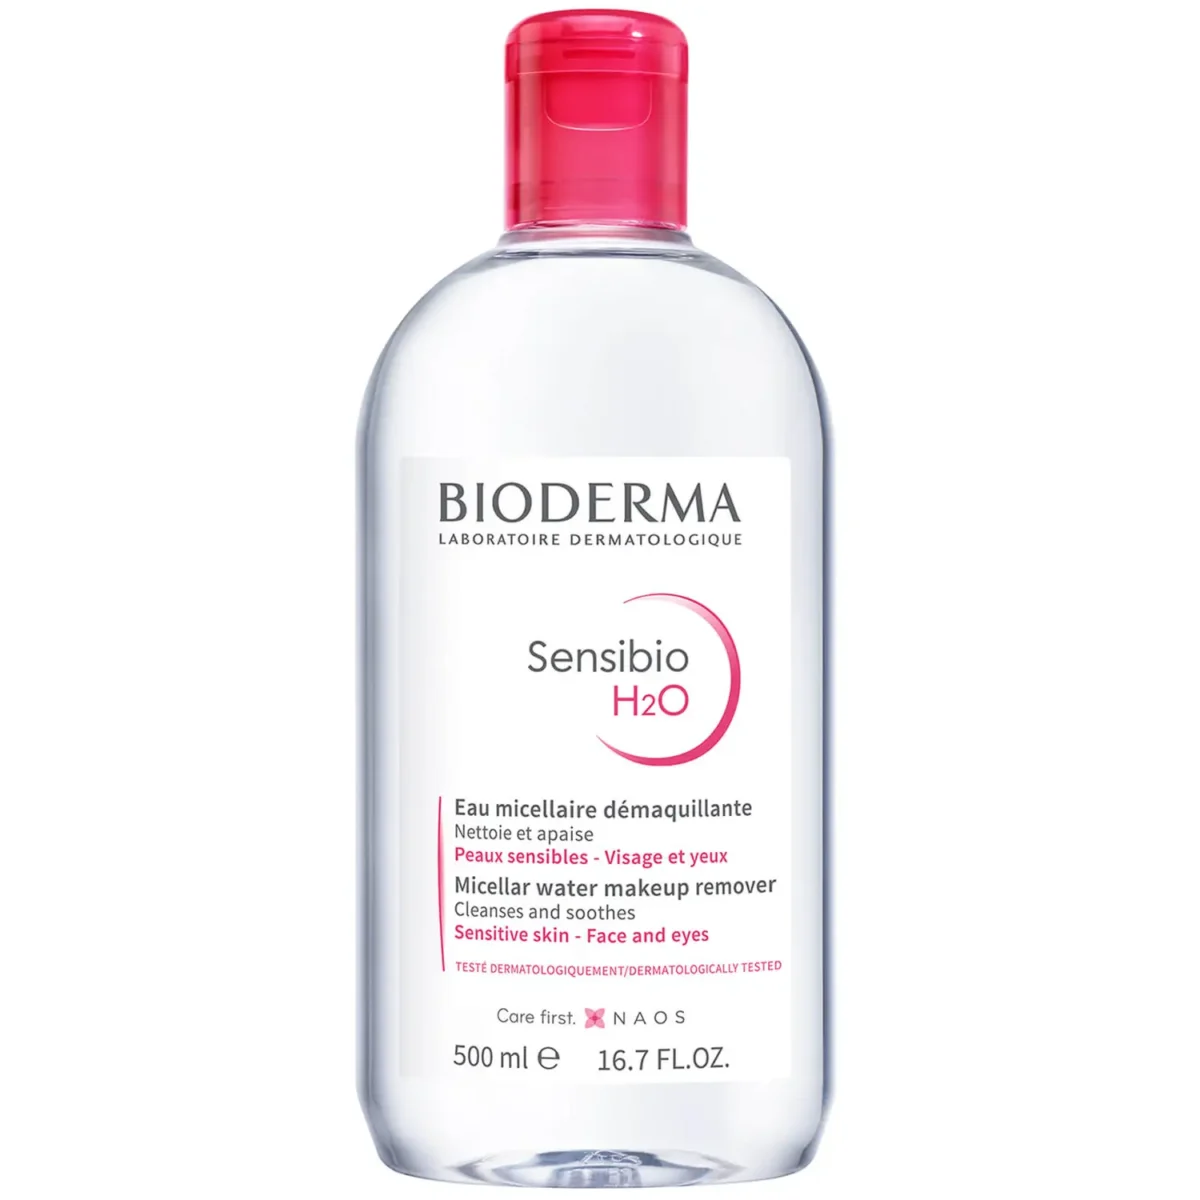 Sensibio H2O, Bioderma